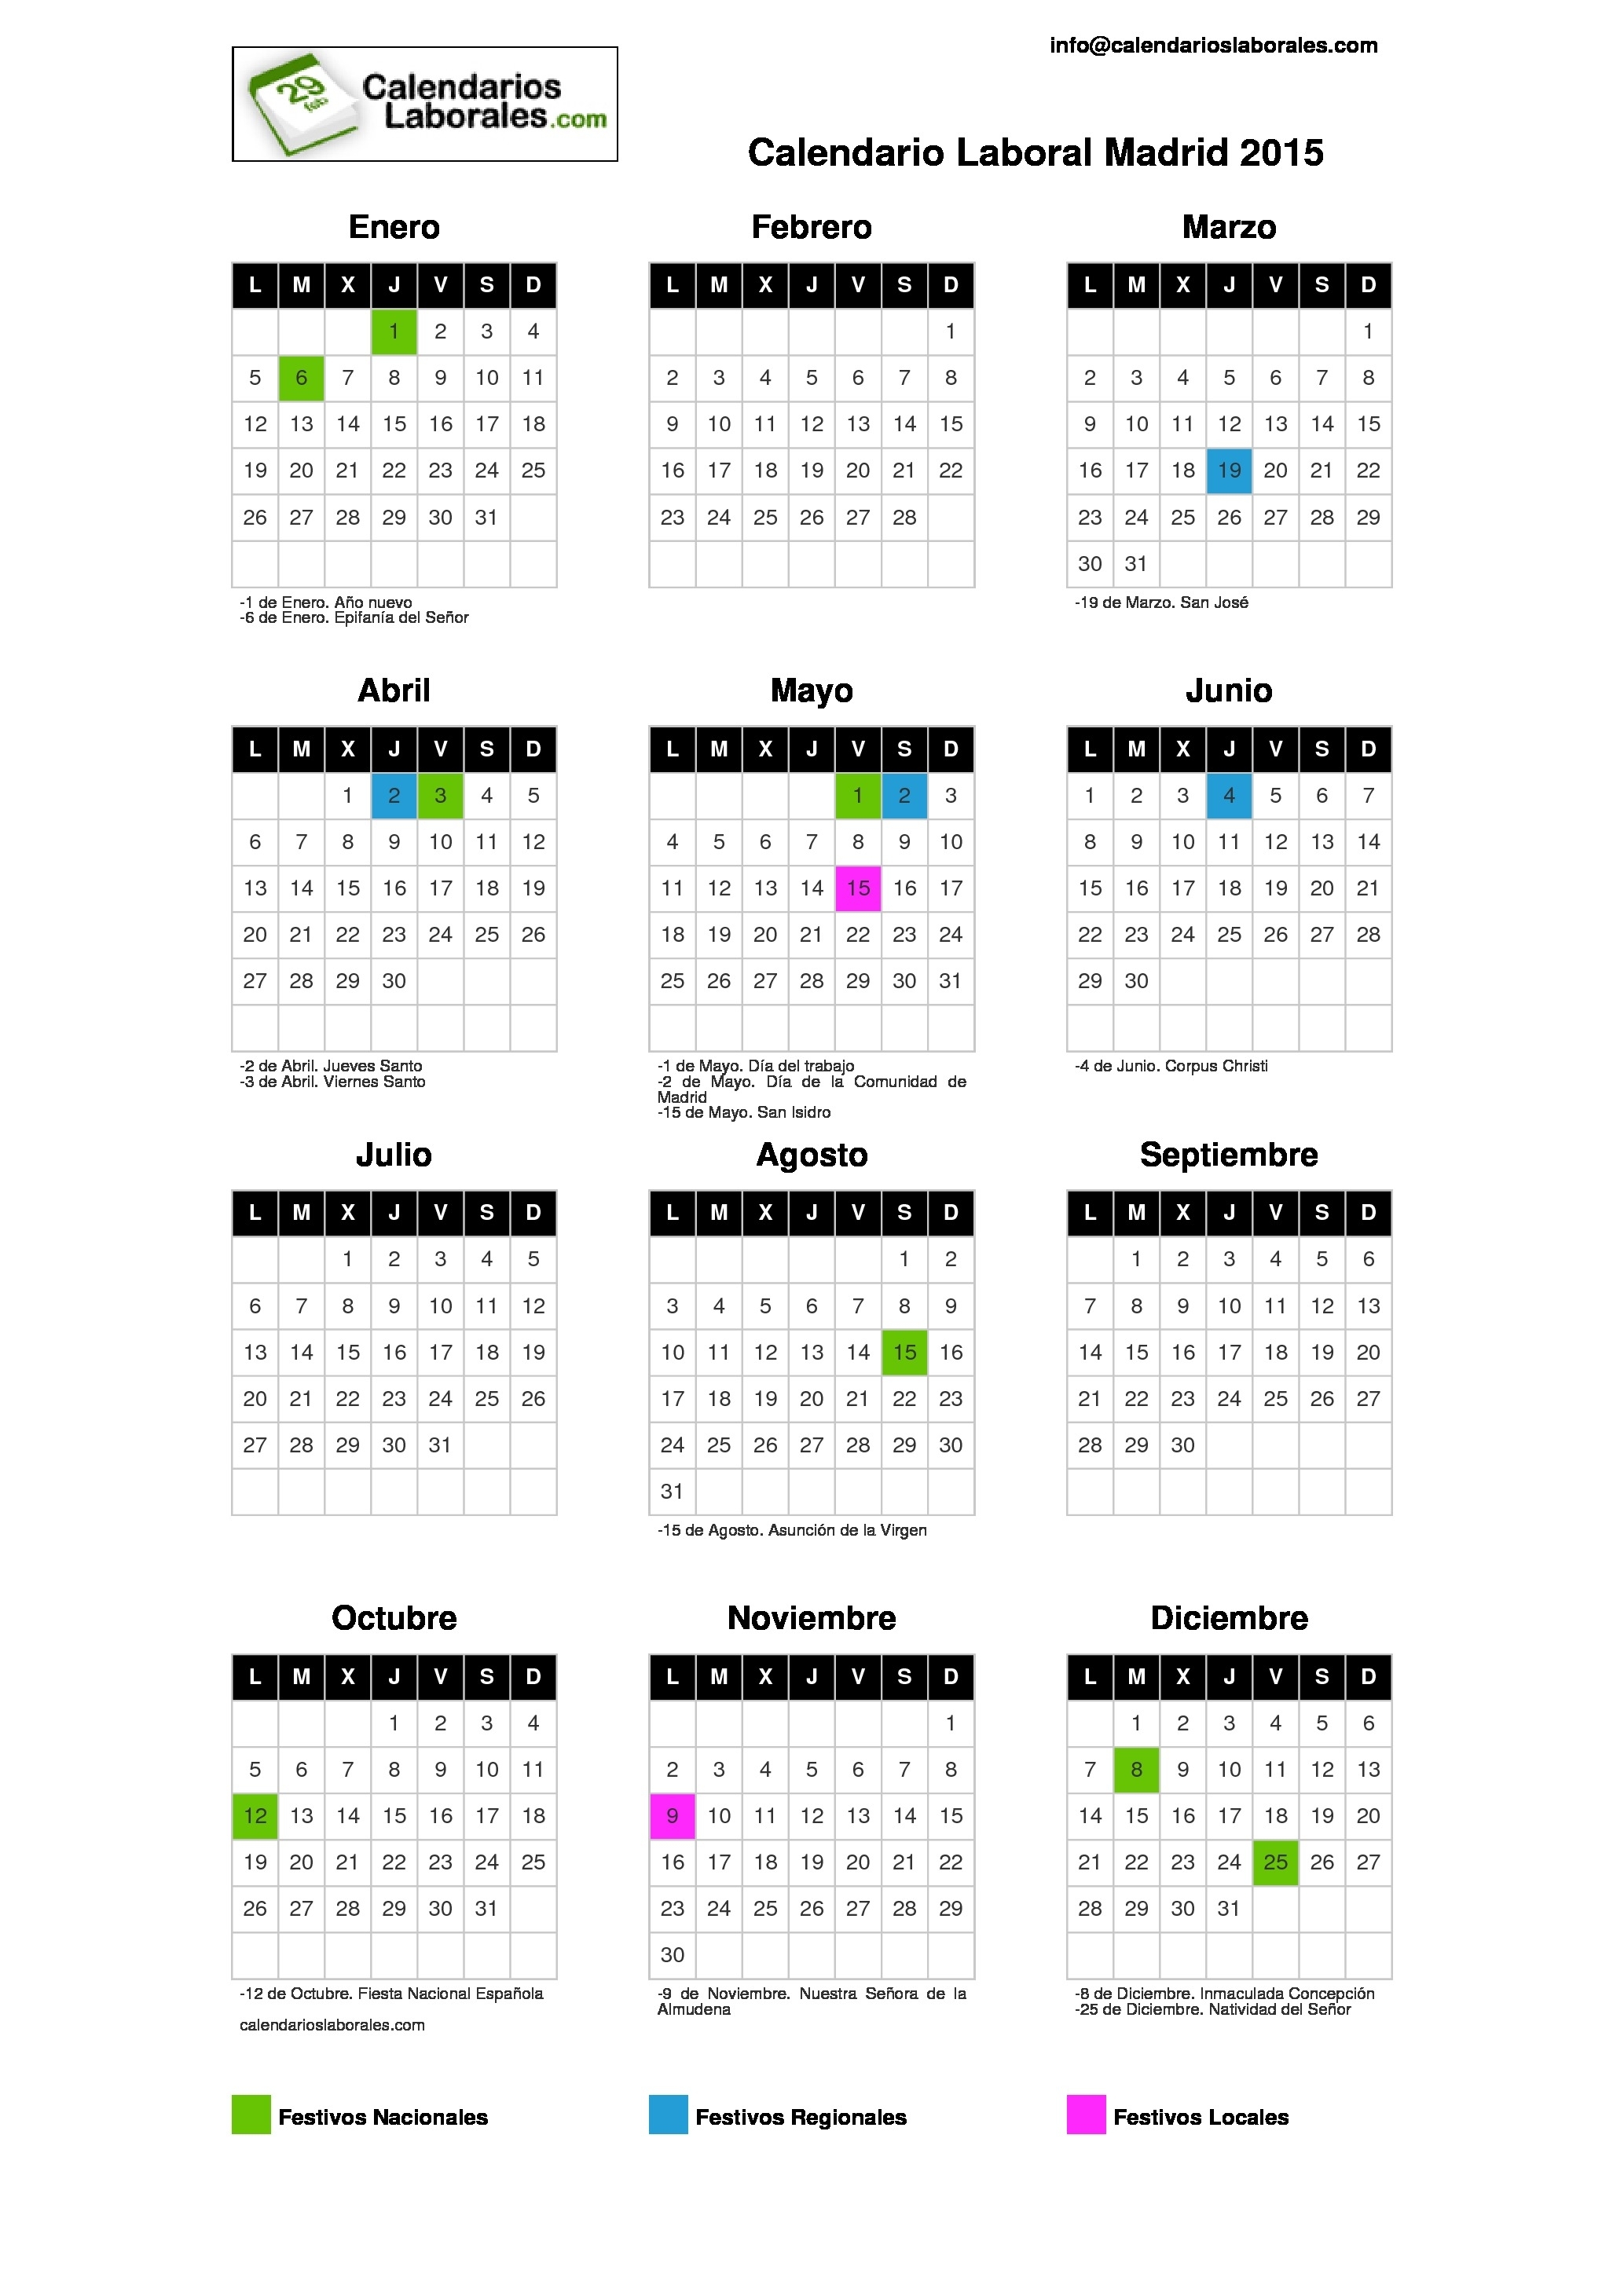 Calendario Laboral Madrid 2015 within Calendario 2015 Para Imprimir Pdf